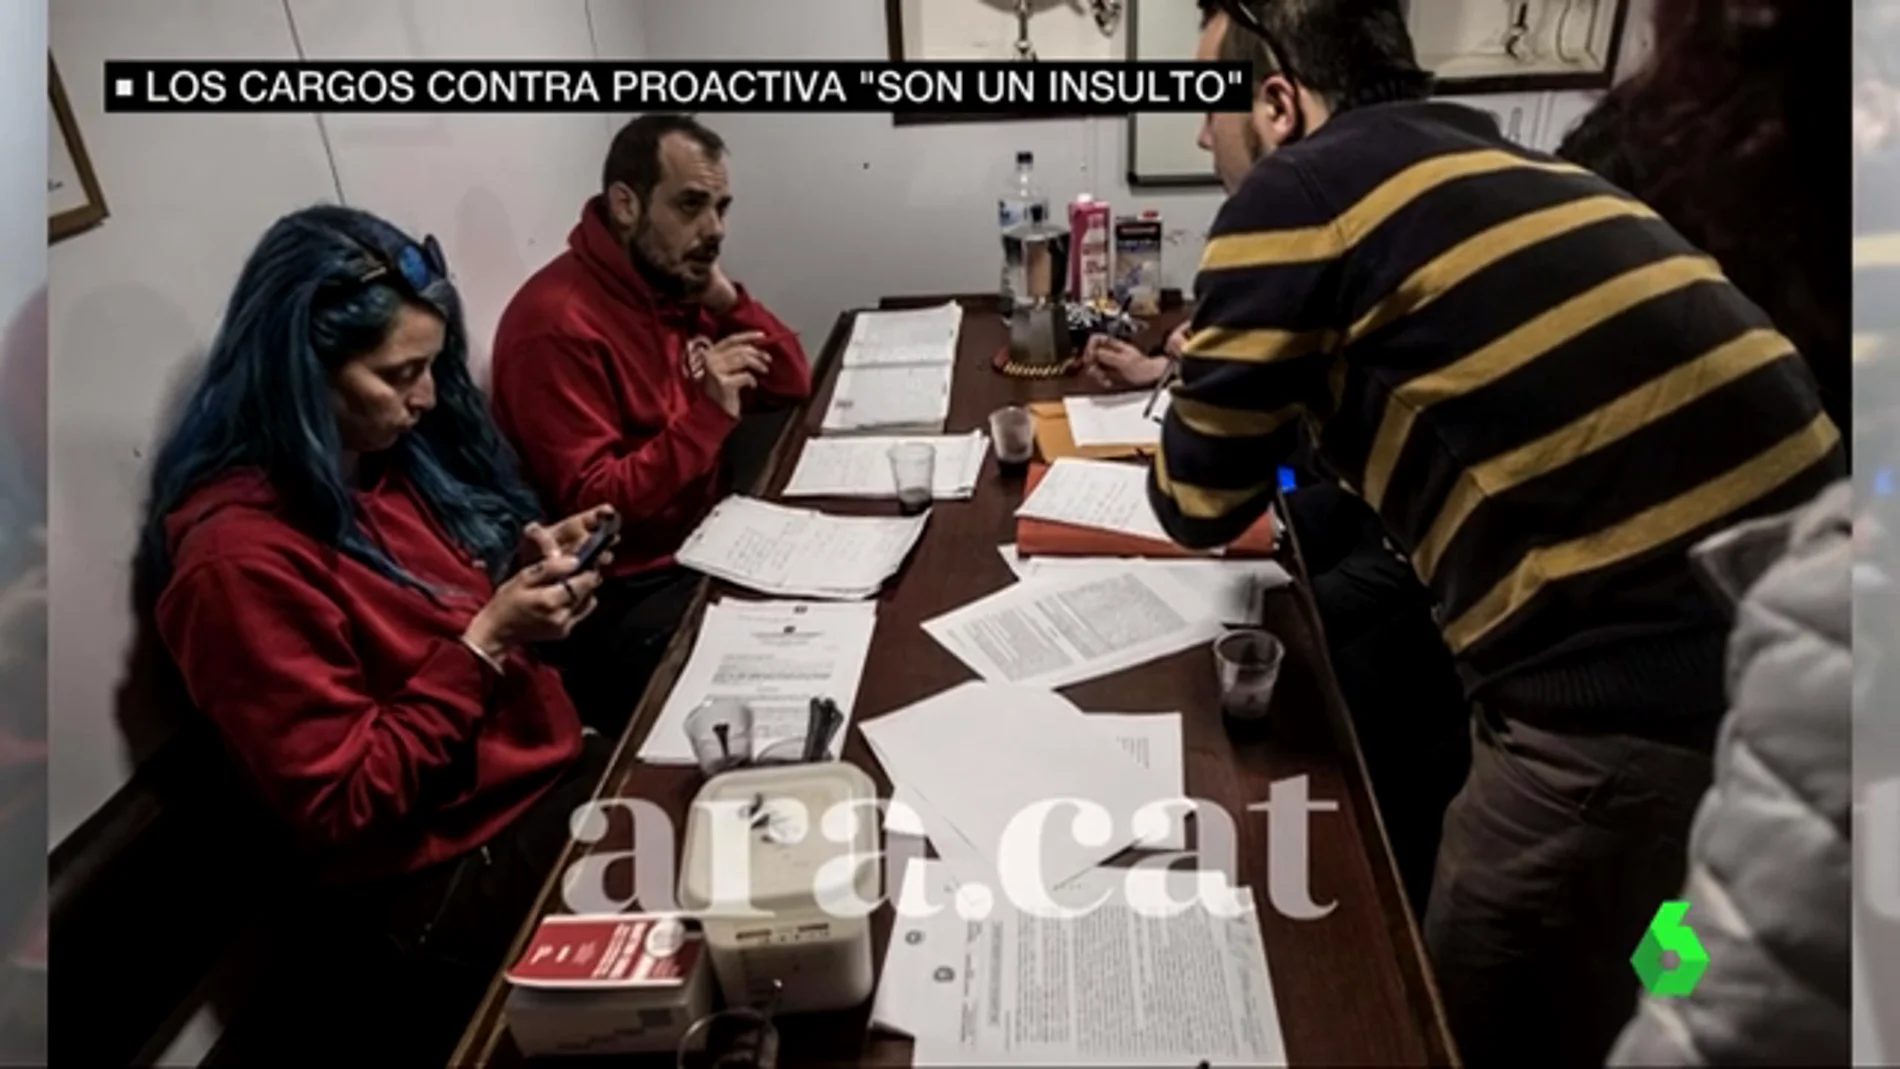 Parte de la tripulación del barco de Proactiva retenido llega a España y denuncian que los cargos son "un insulto"